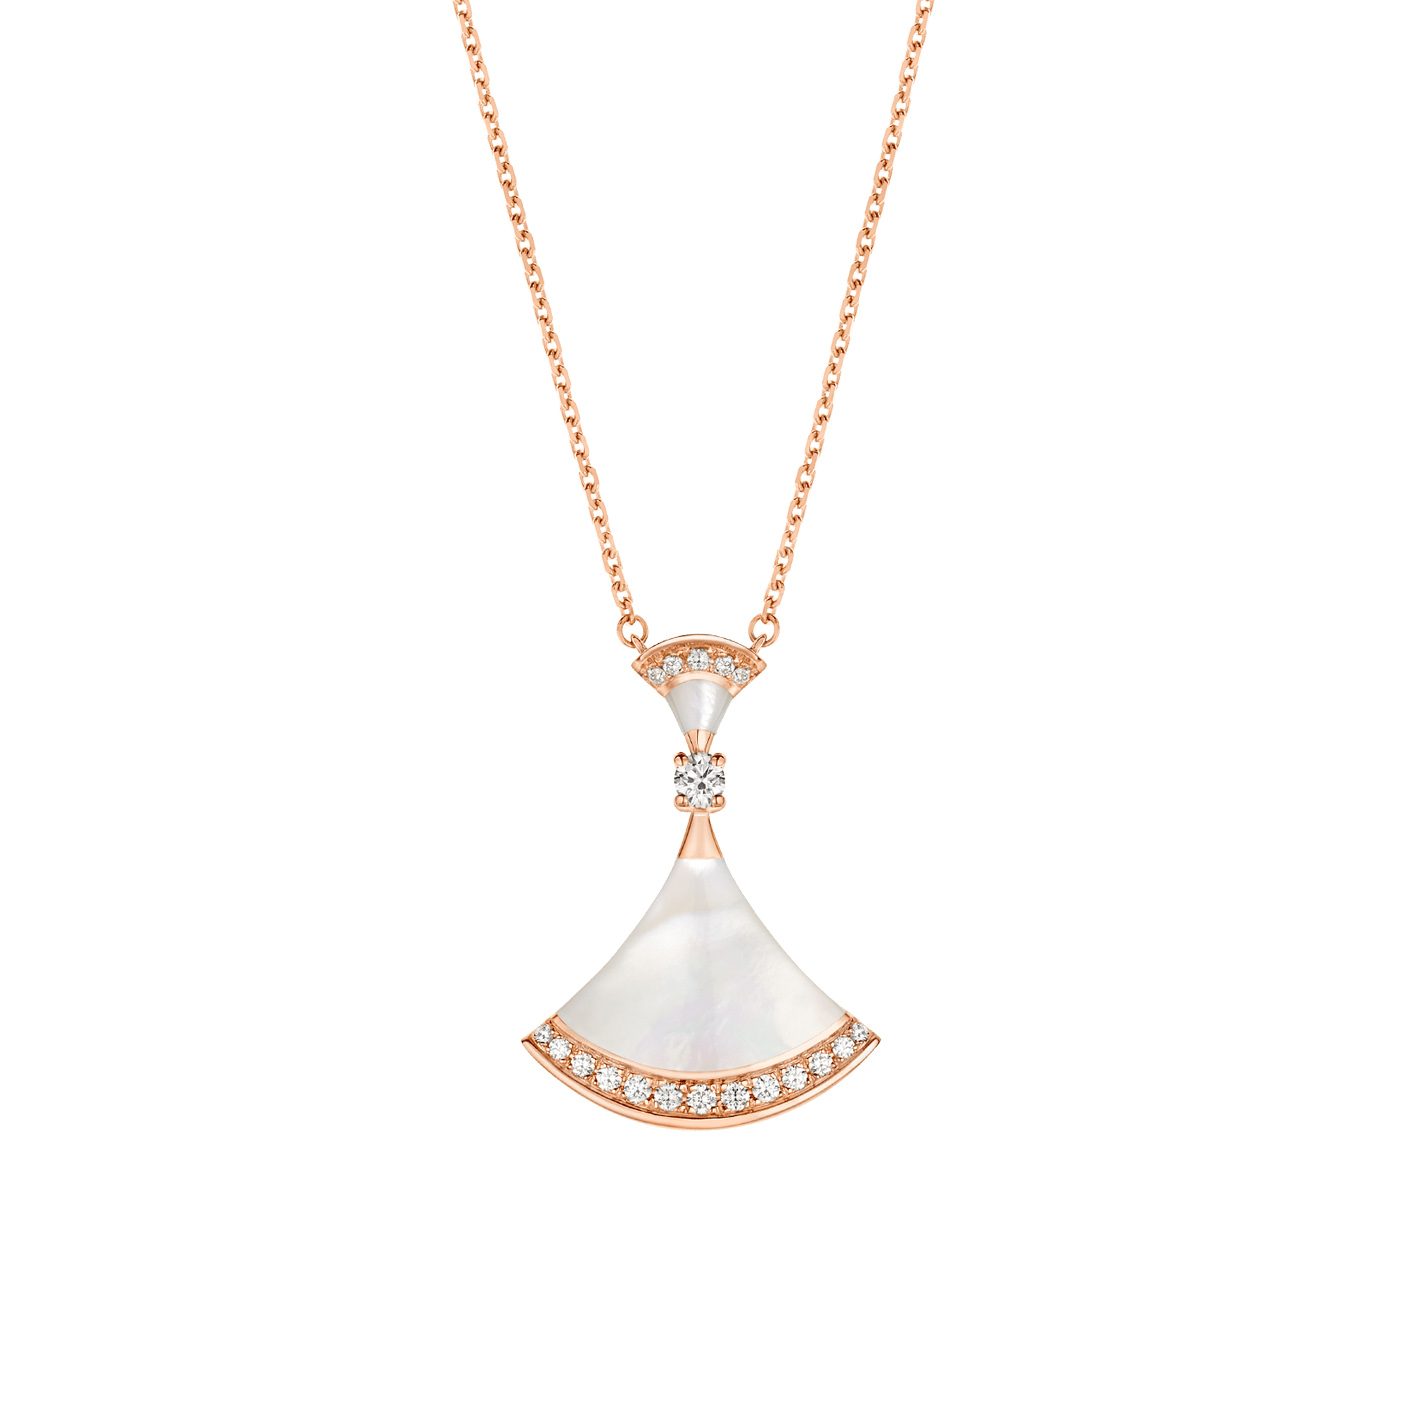 Velkoobchod OEM ODM 18kt růžové zlato OEM/ODM Sada šperků s perleťovými prvky, kulatým briliantovým diamantem a pavé diamanty Vlastní design šperků Dodavatelé